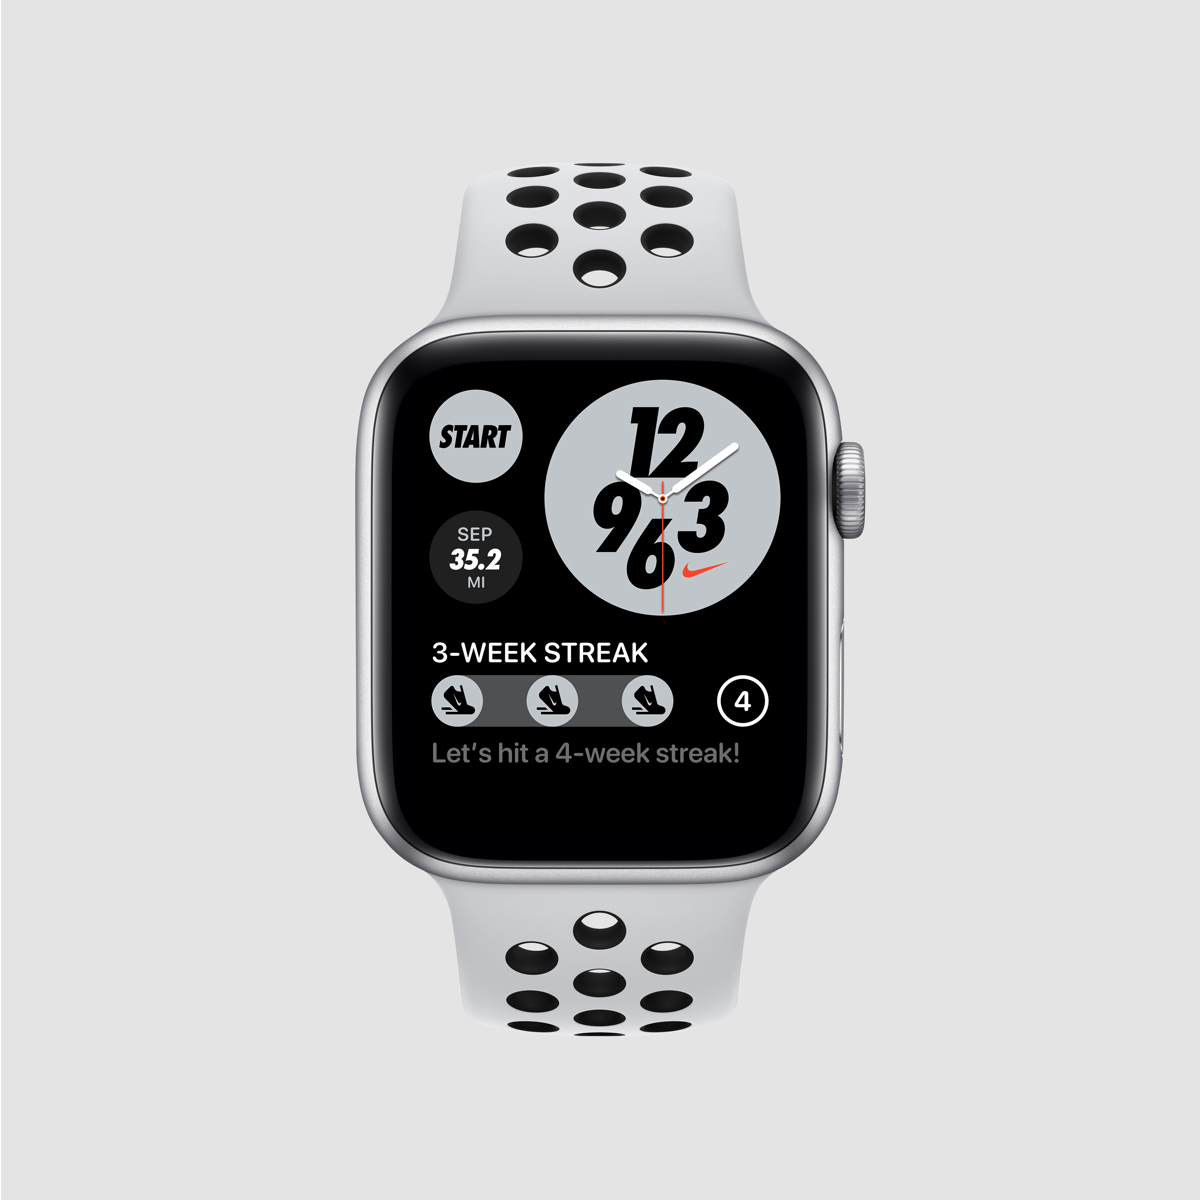 Nike Run Club porta nuovo quadrante e funzioni su Apple Watch - Macitynet.it